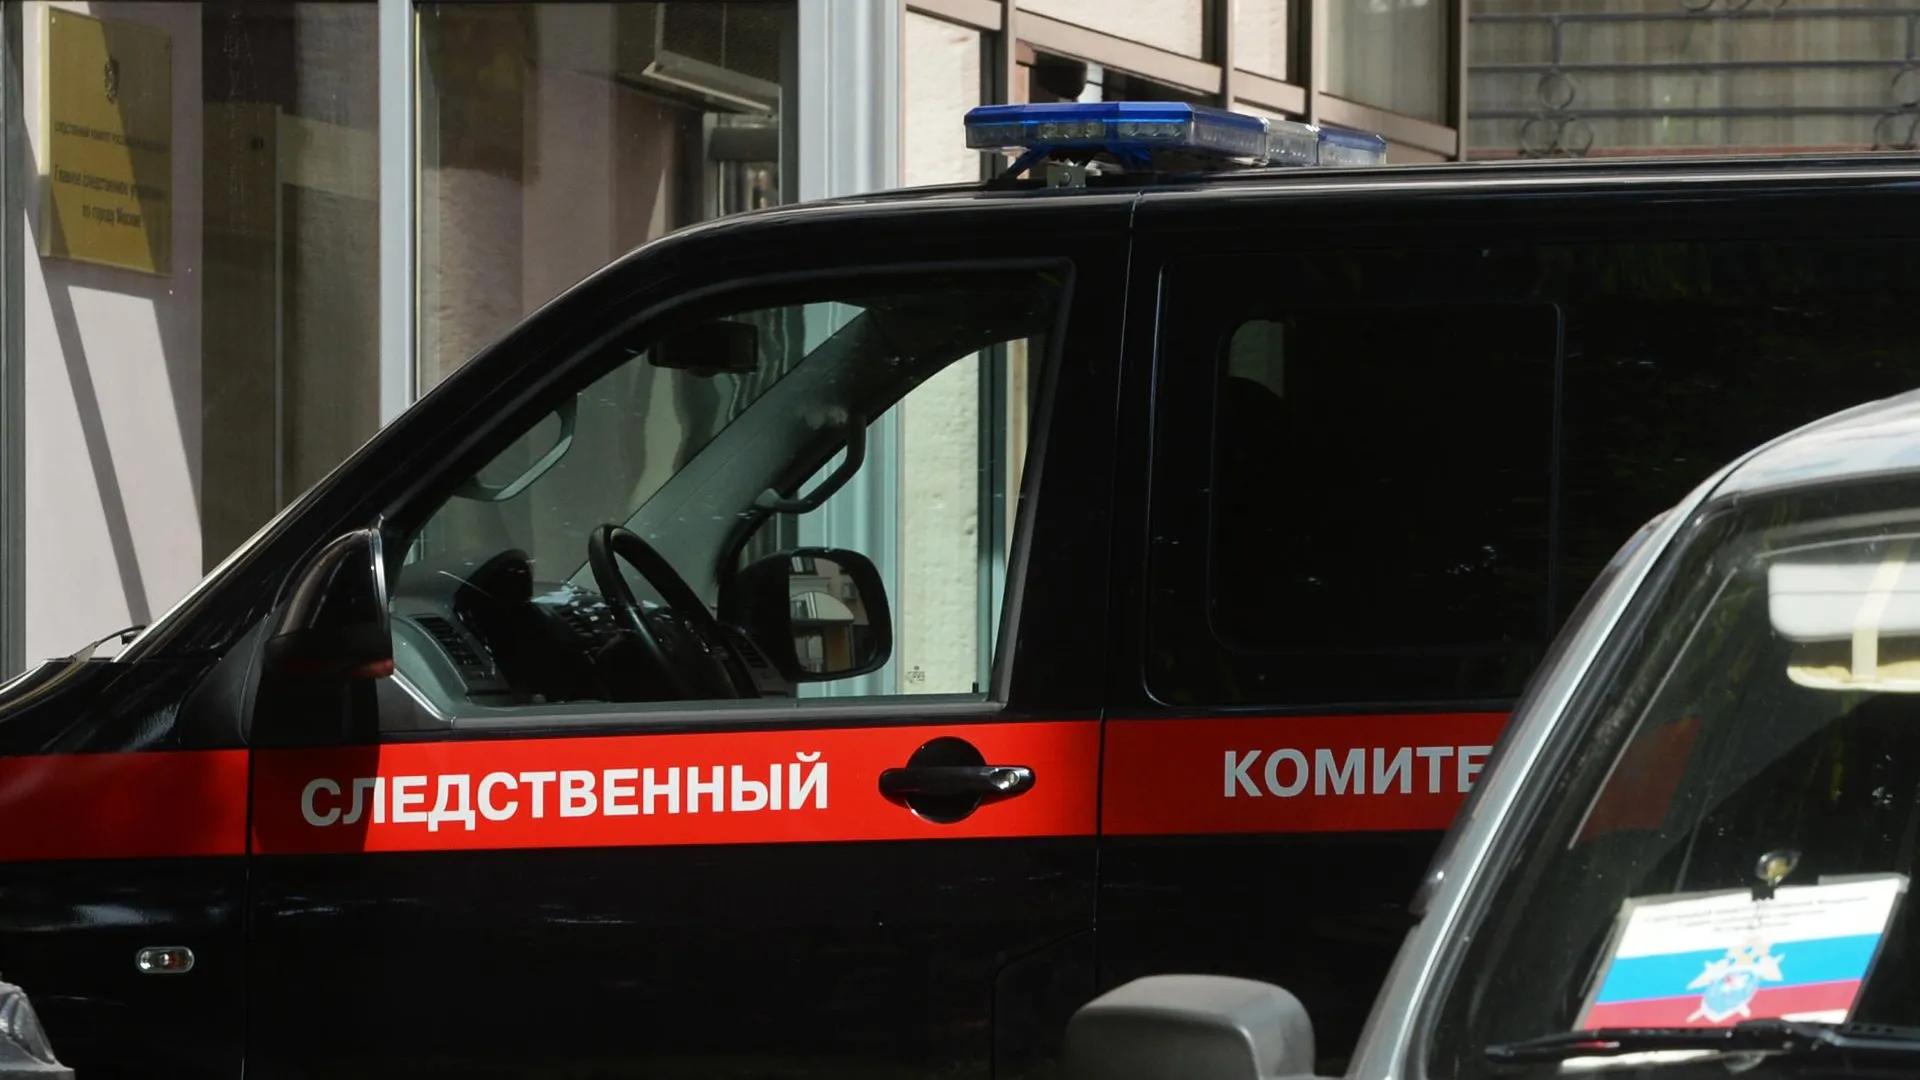 Возбуждено уголовное дело по факту гибели девочки‑подростка в новой Москве